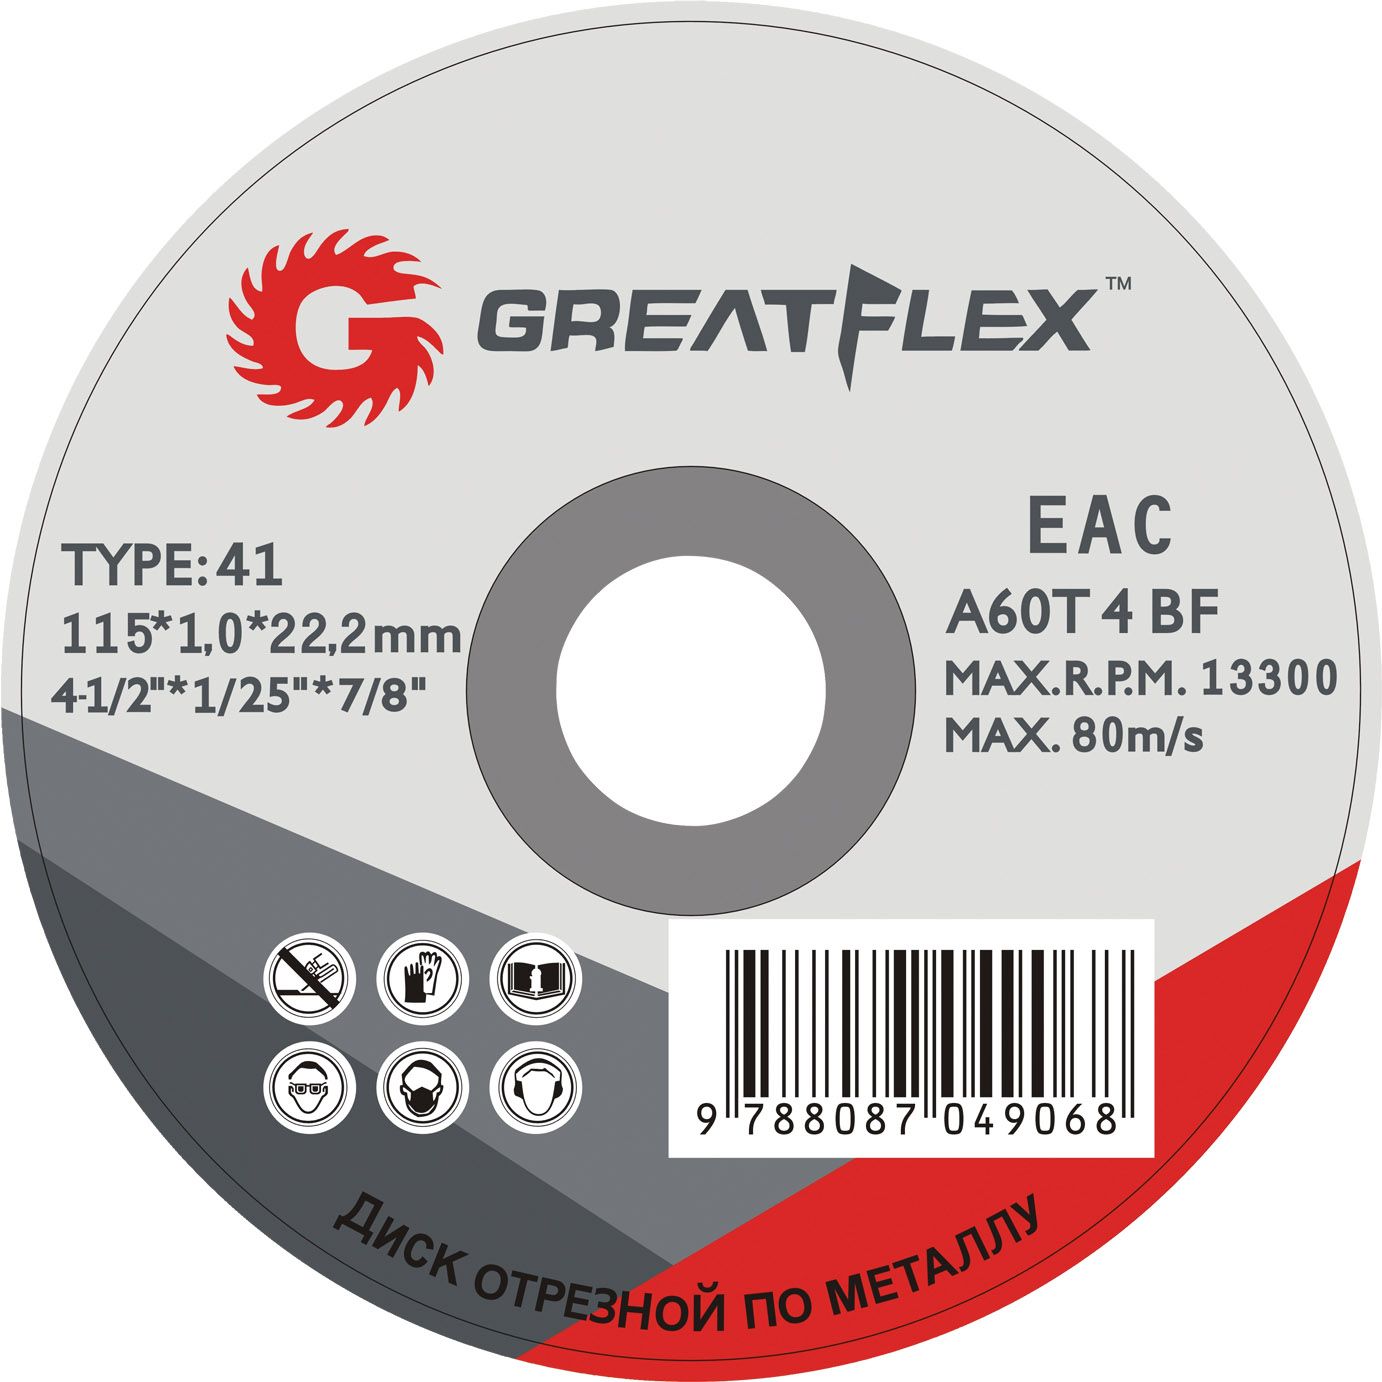 Купить Greatflex 125 мм 1 мм